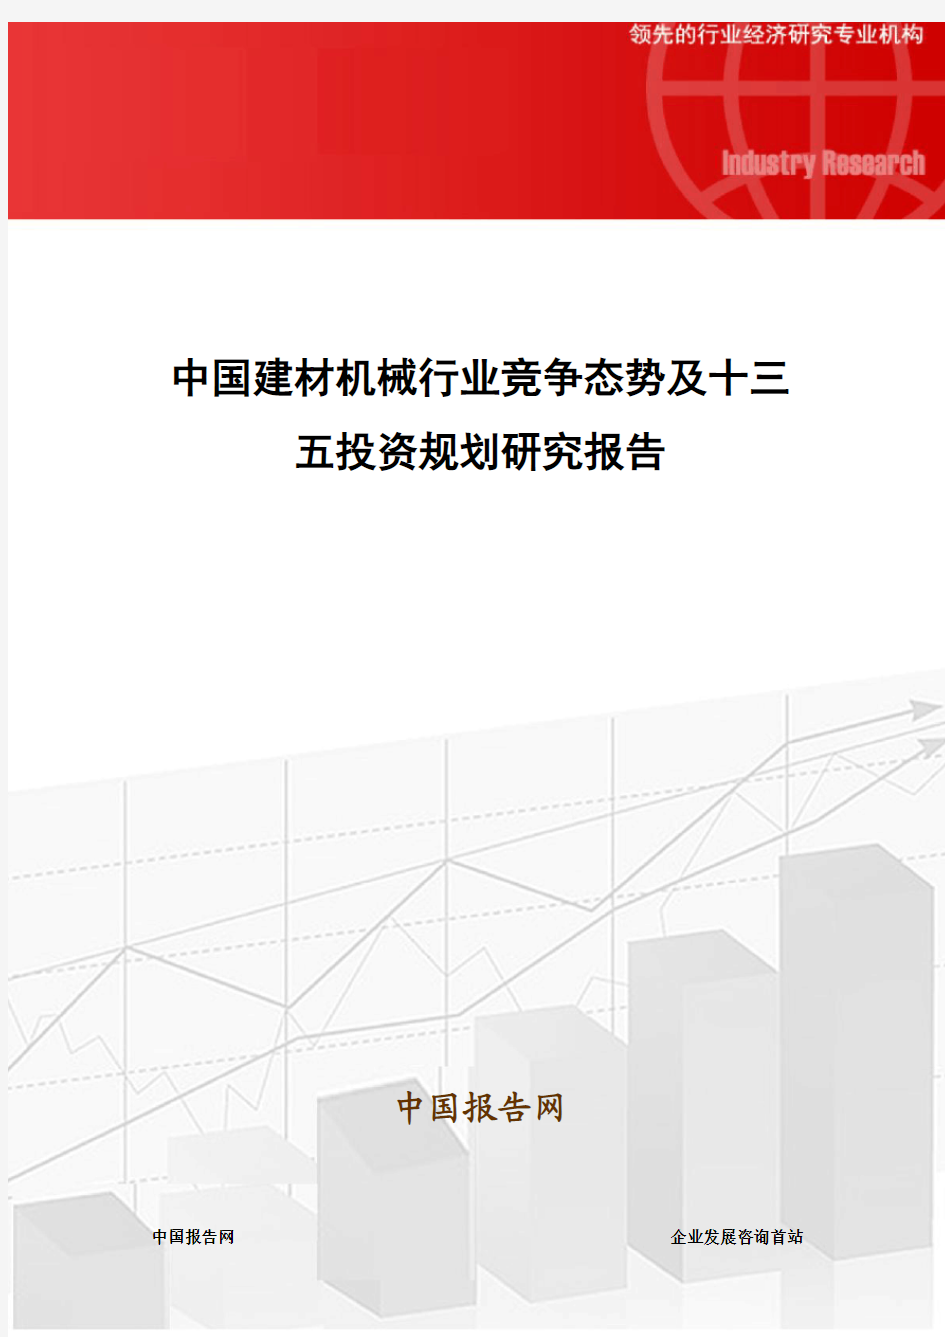 中国建材机械行业竞争态势及十三五投资规划研究报告